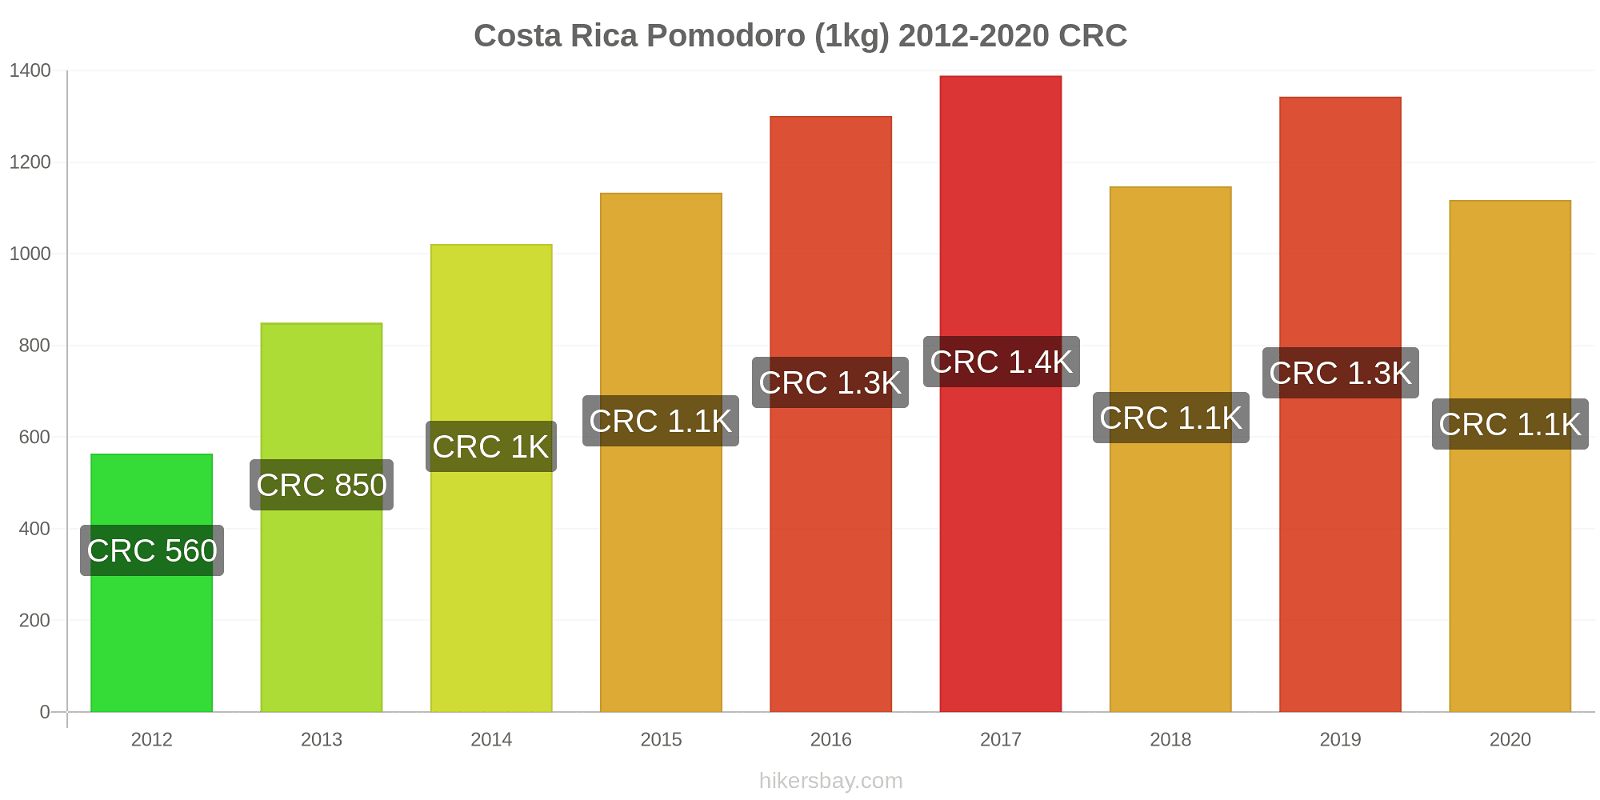 Costa Rica variazioni di prezzo Pomodoro (1kg) hikersbay.com